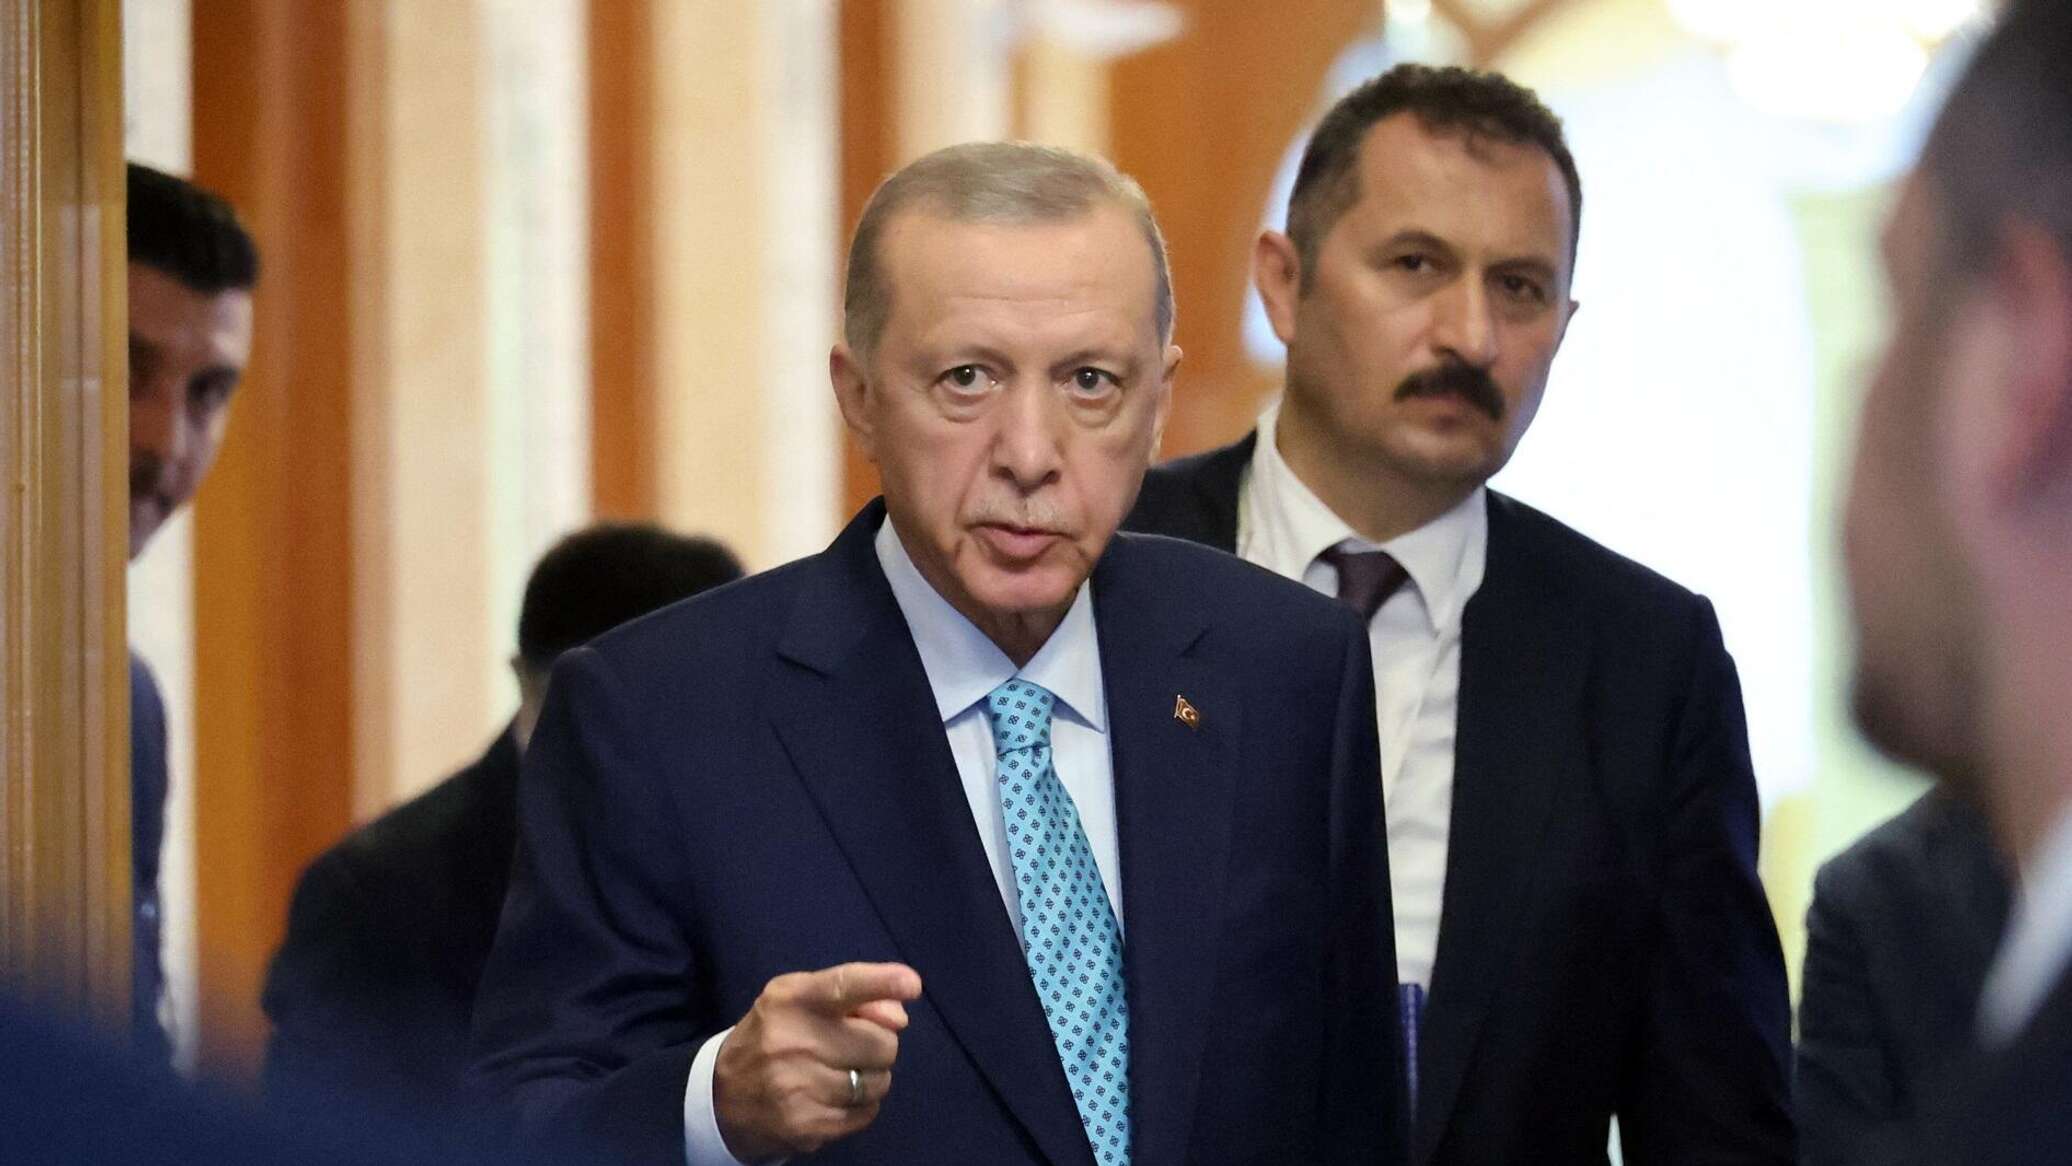 أردوغان يتهم إسرائيل بارتكاب "مجزرة" في غزة ويطالبها بعدم اتخاذ قرارات "متهورة"